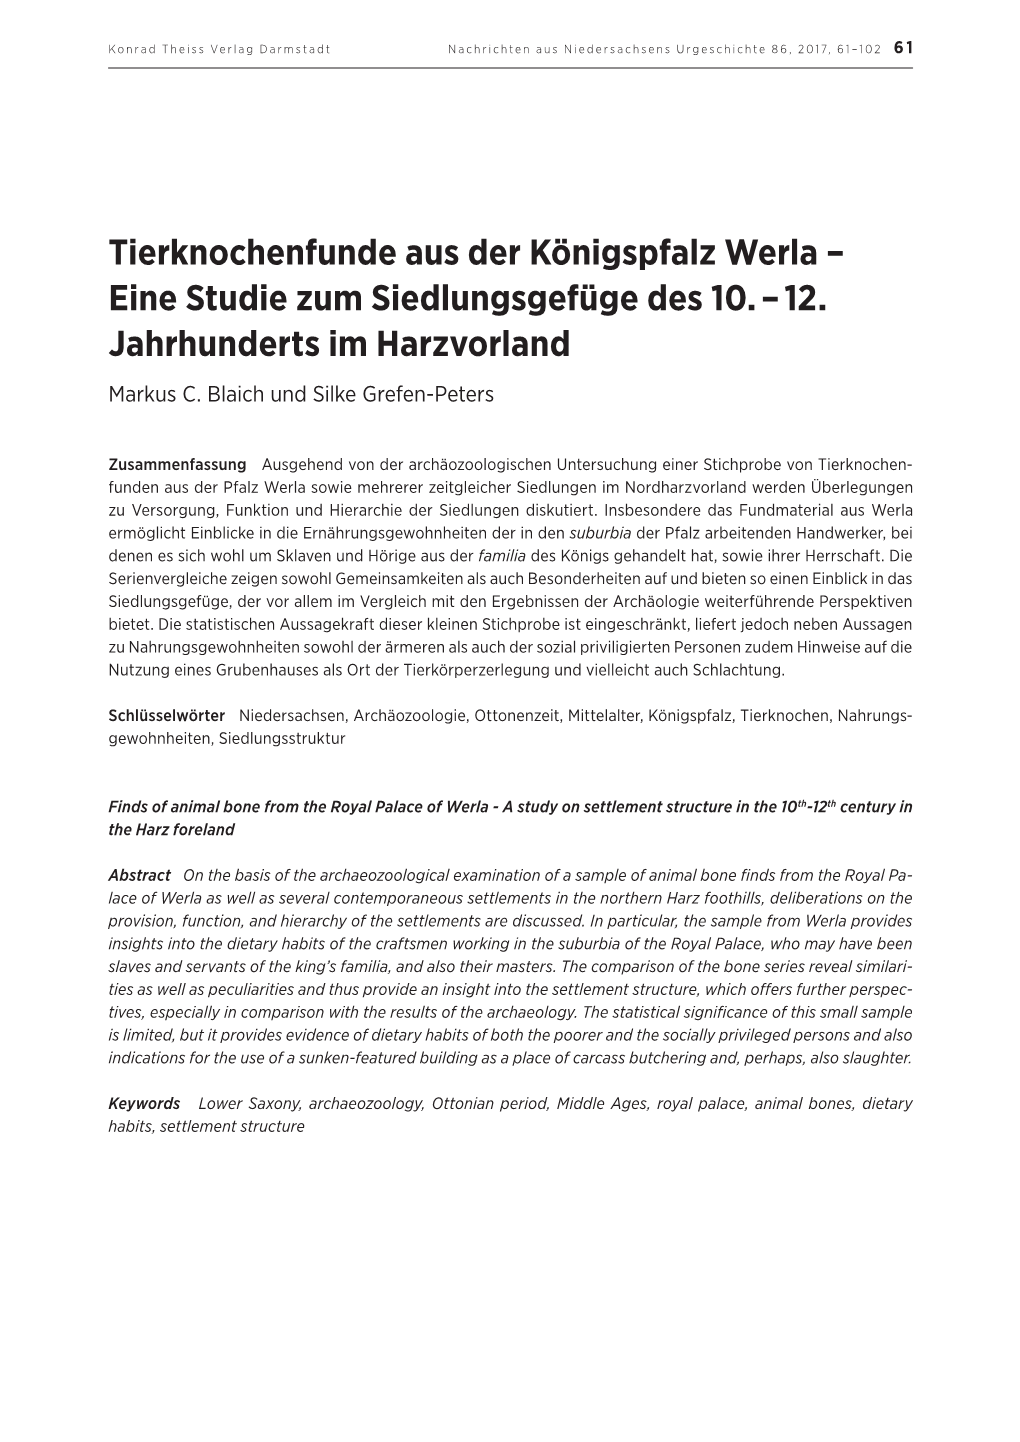 Tierknochenfunde Aus Der Königspfalz Werla – Eine Studie Zum Siedlungsgefüge Des 10. – 12. Jahrhunderts Im Harzvorland Markus C